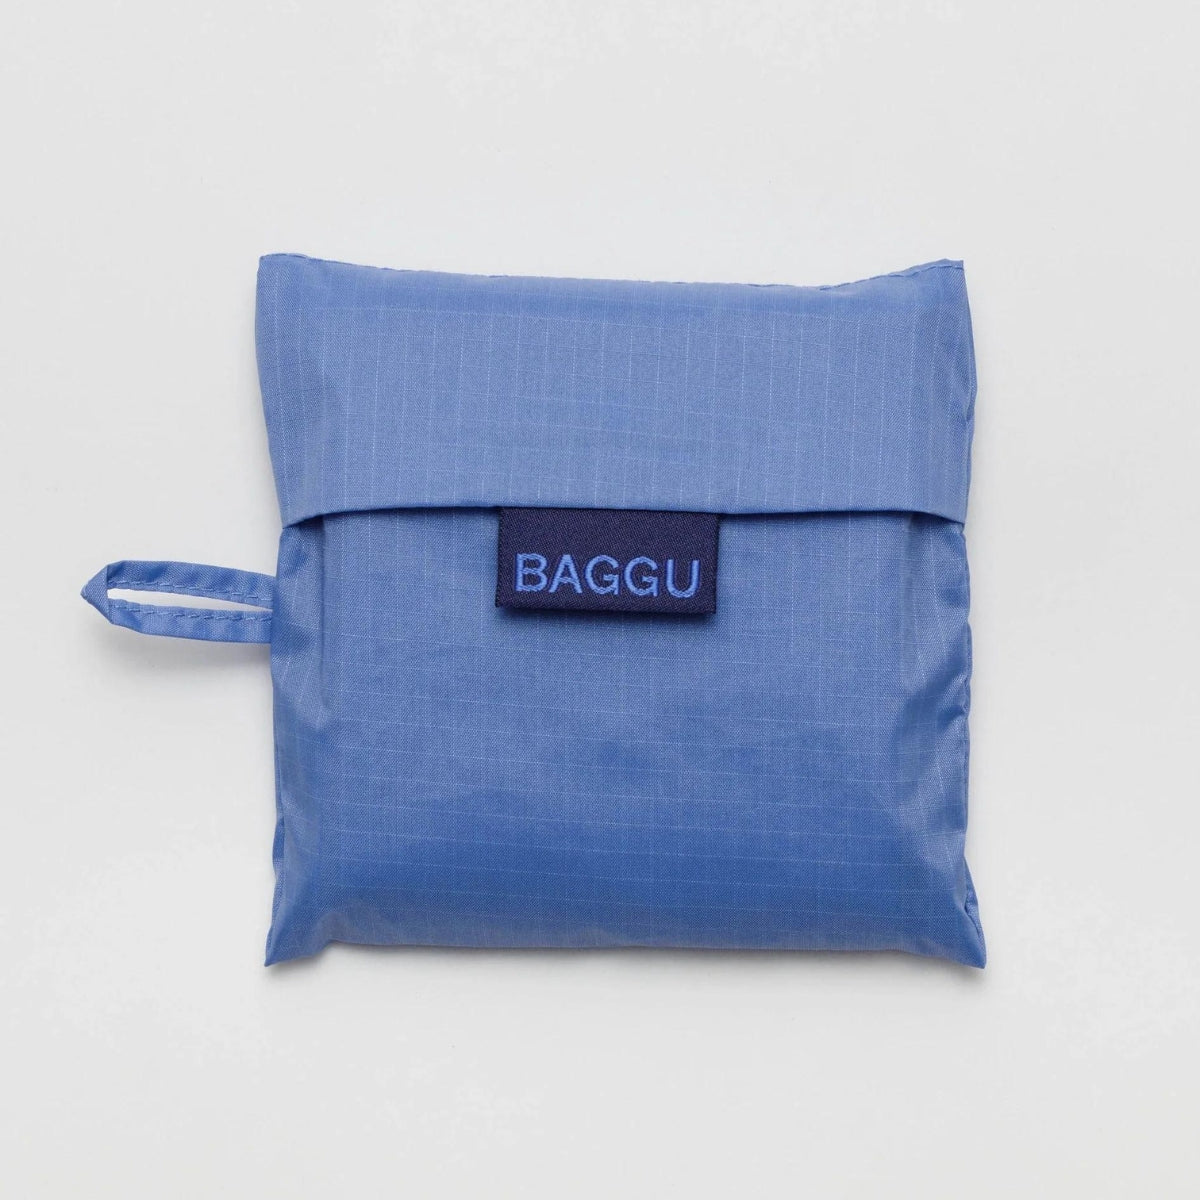 Baggu Standard Bag in Pansy Blue